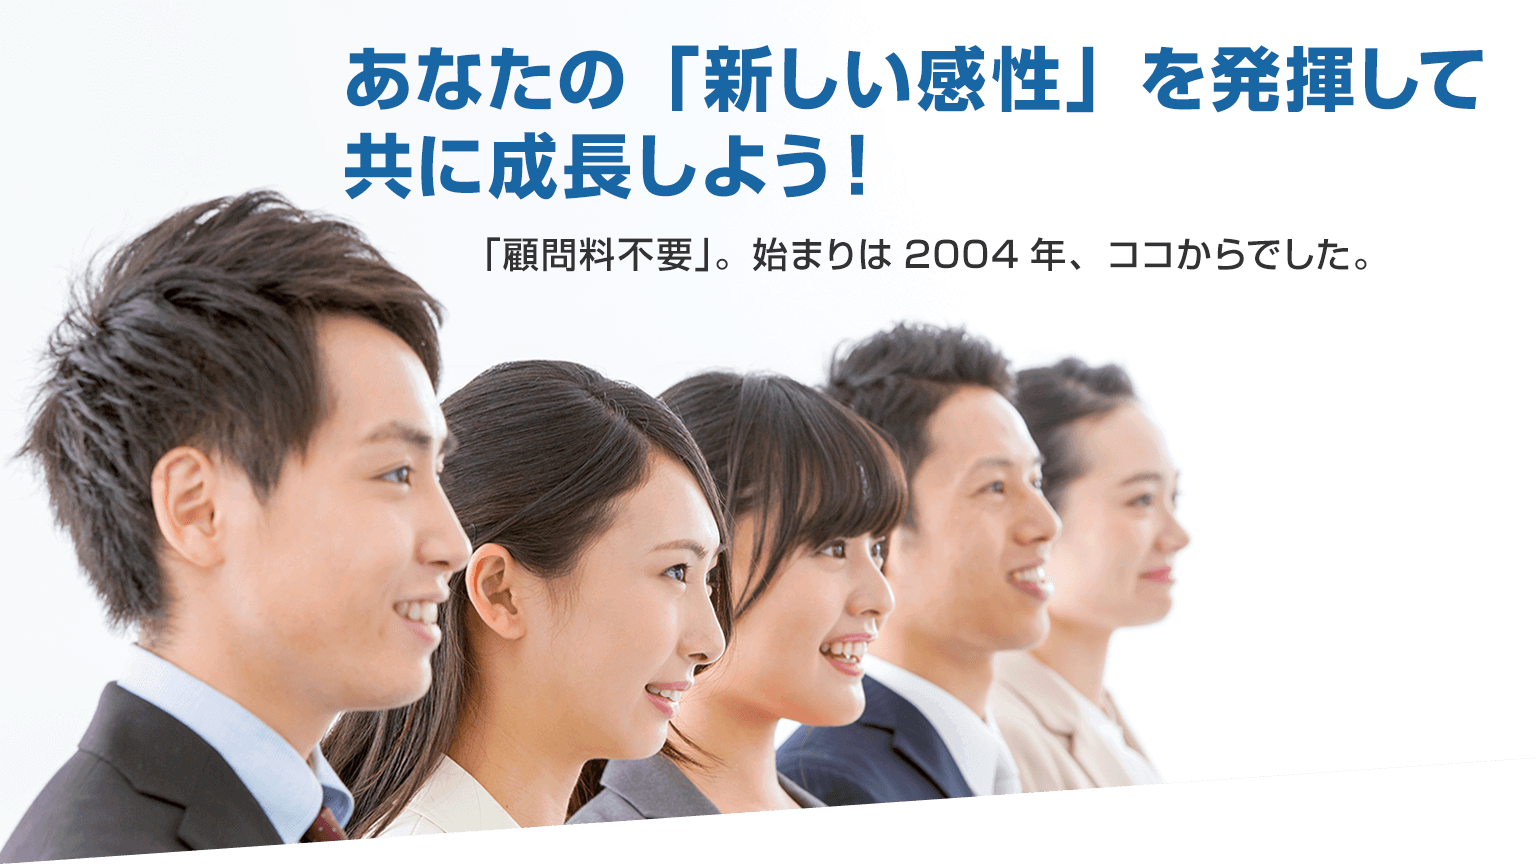 三輪厚二税理士事務所の求人Net 大阪の税理士事務所、会計事務所に就職・転職を考えている人に向けた求人・転職・採用情報です。